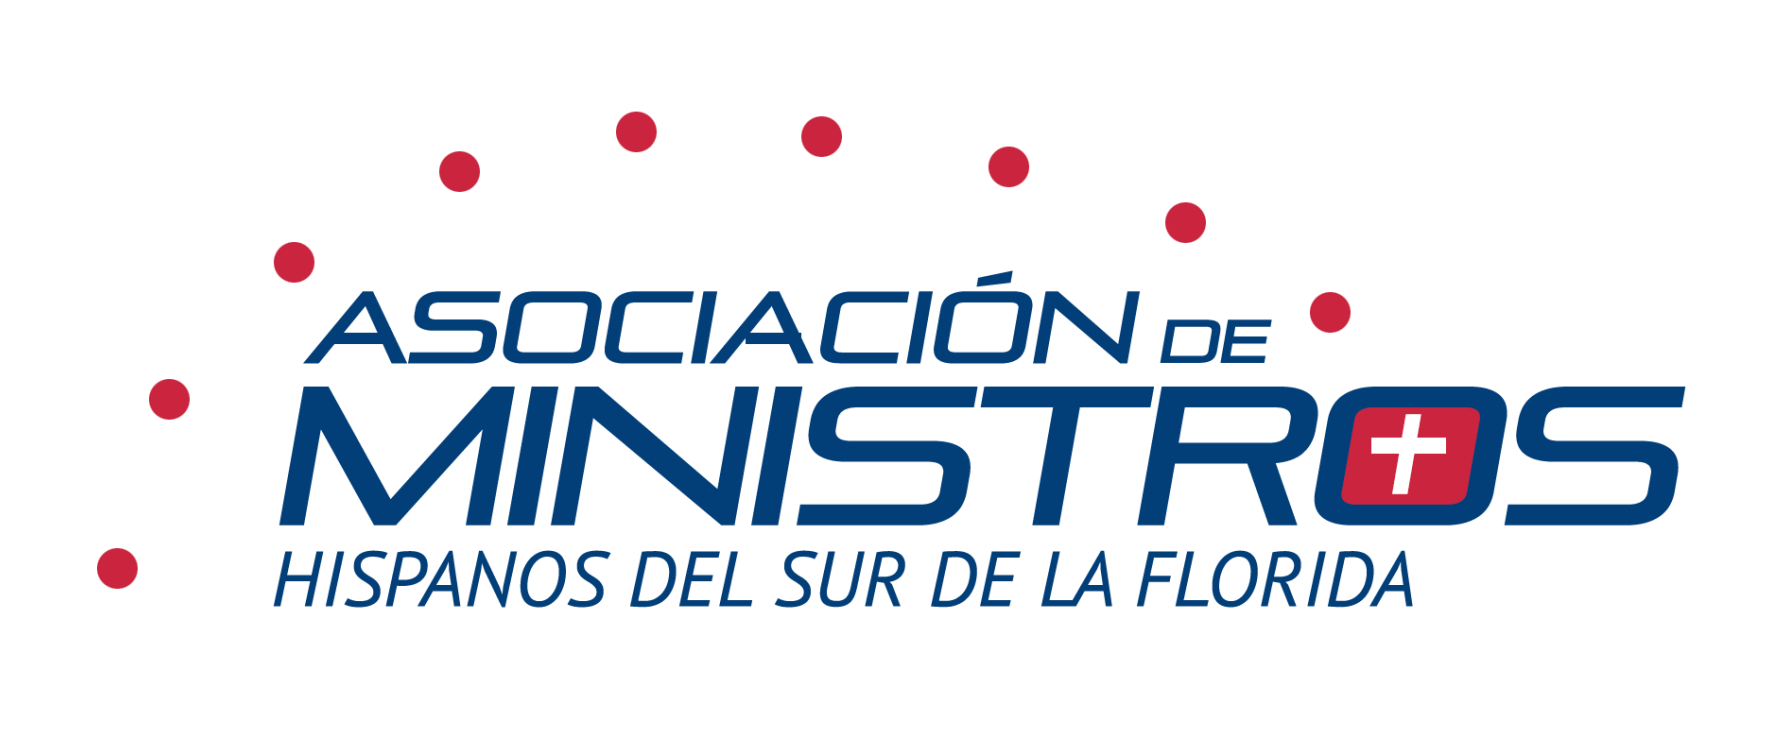 Asociación de Ministros Hispanos del Sur de la Florida